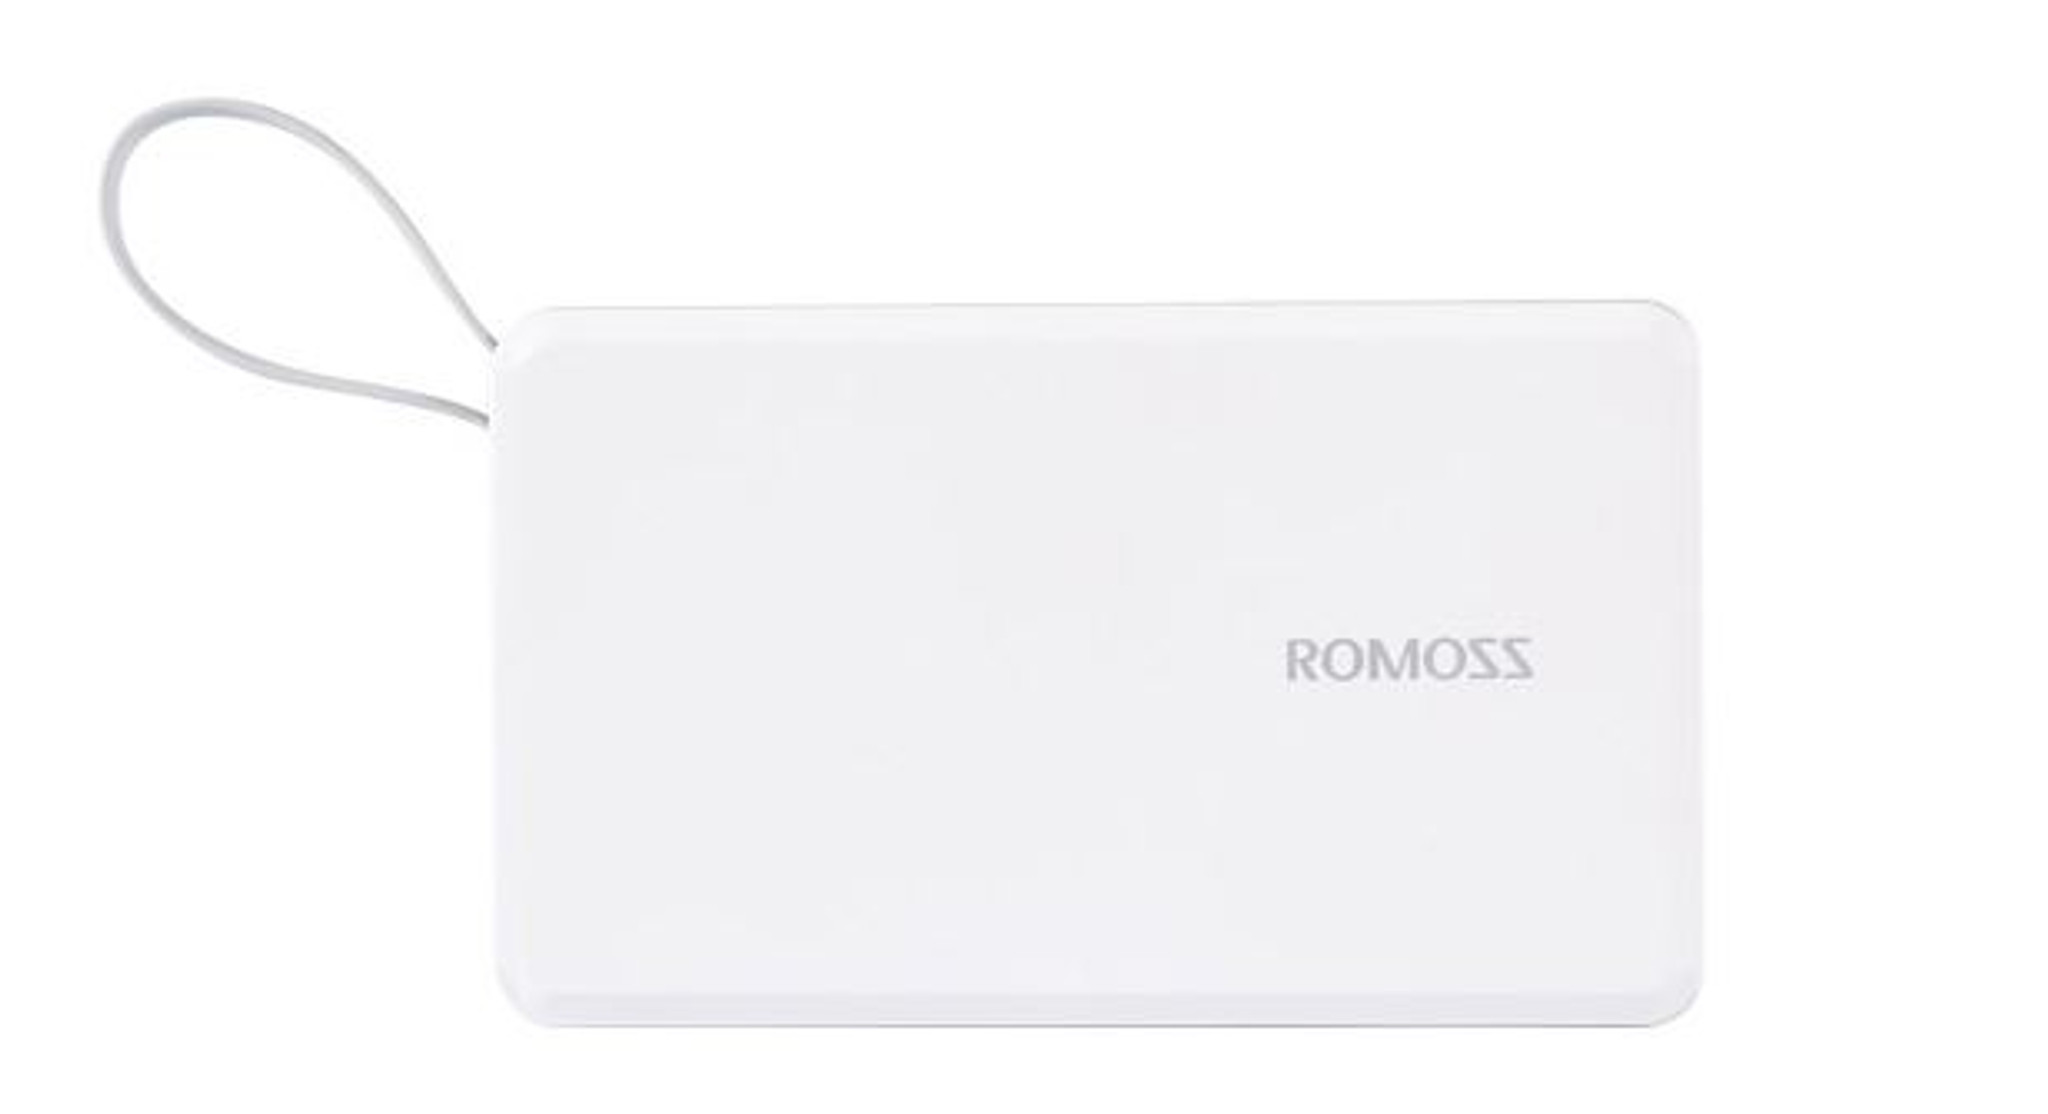 Romoss Power Bank - 5000mah - White